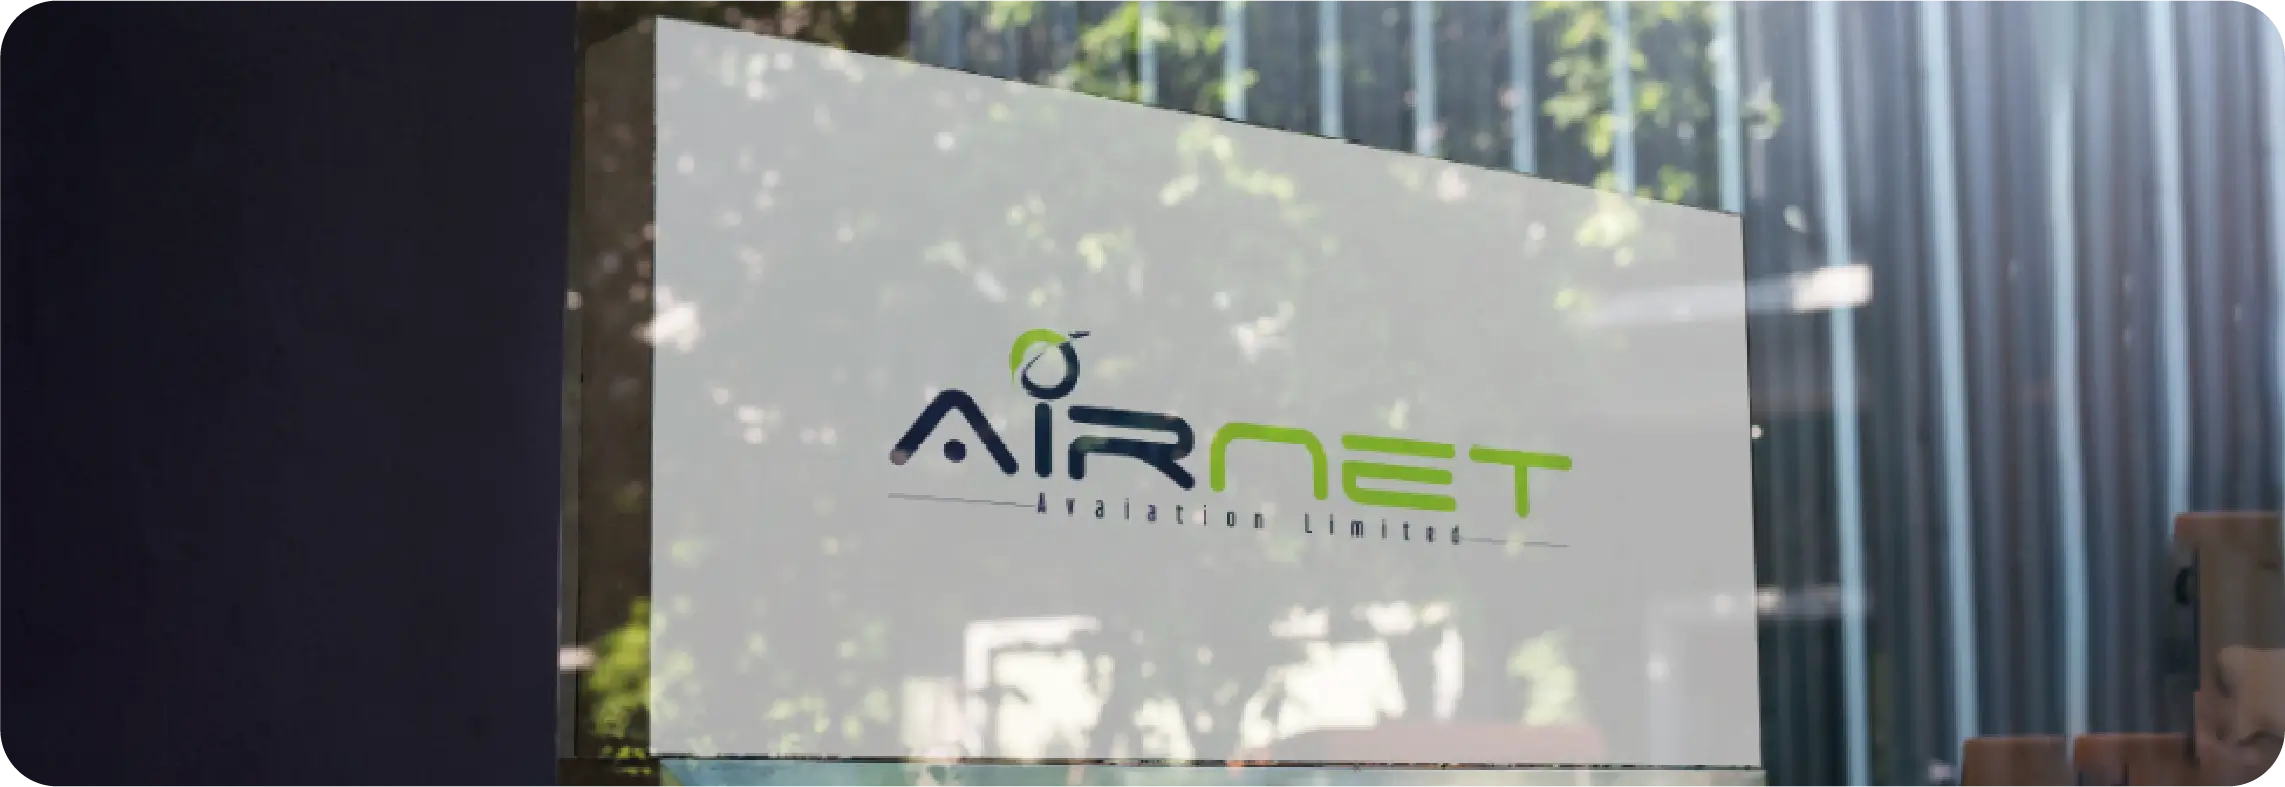 Airnet Aviation Logo by AdVerve Agency